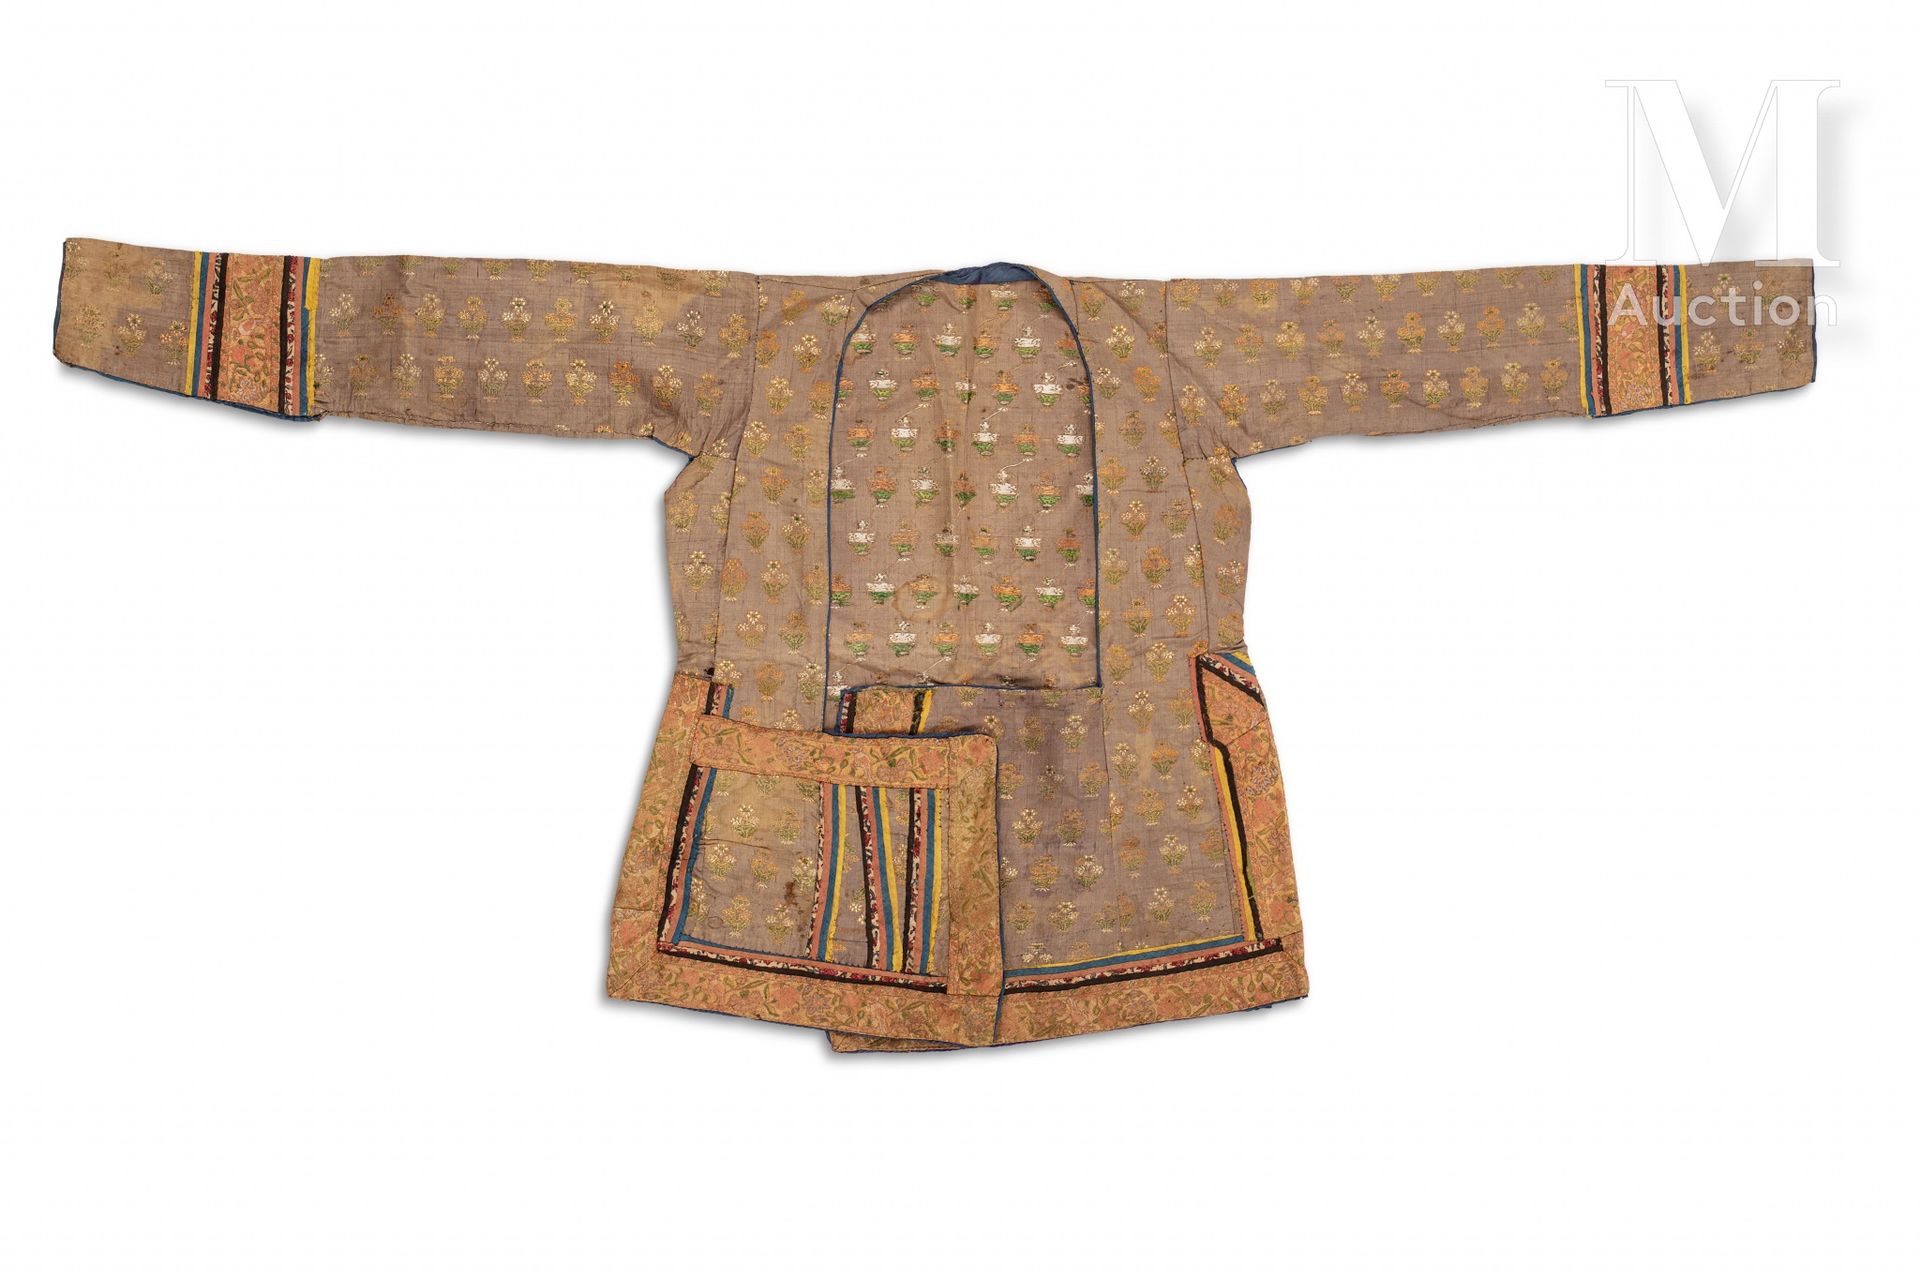 Veste safavide Irán, siglo XVIII

Prenda de seda gris de manga tres cuartos bord&hellip;